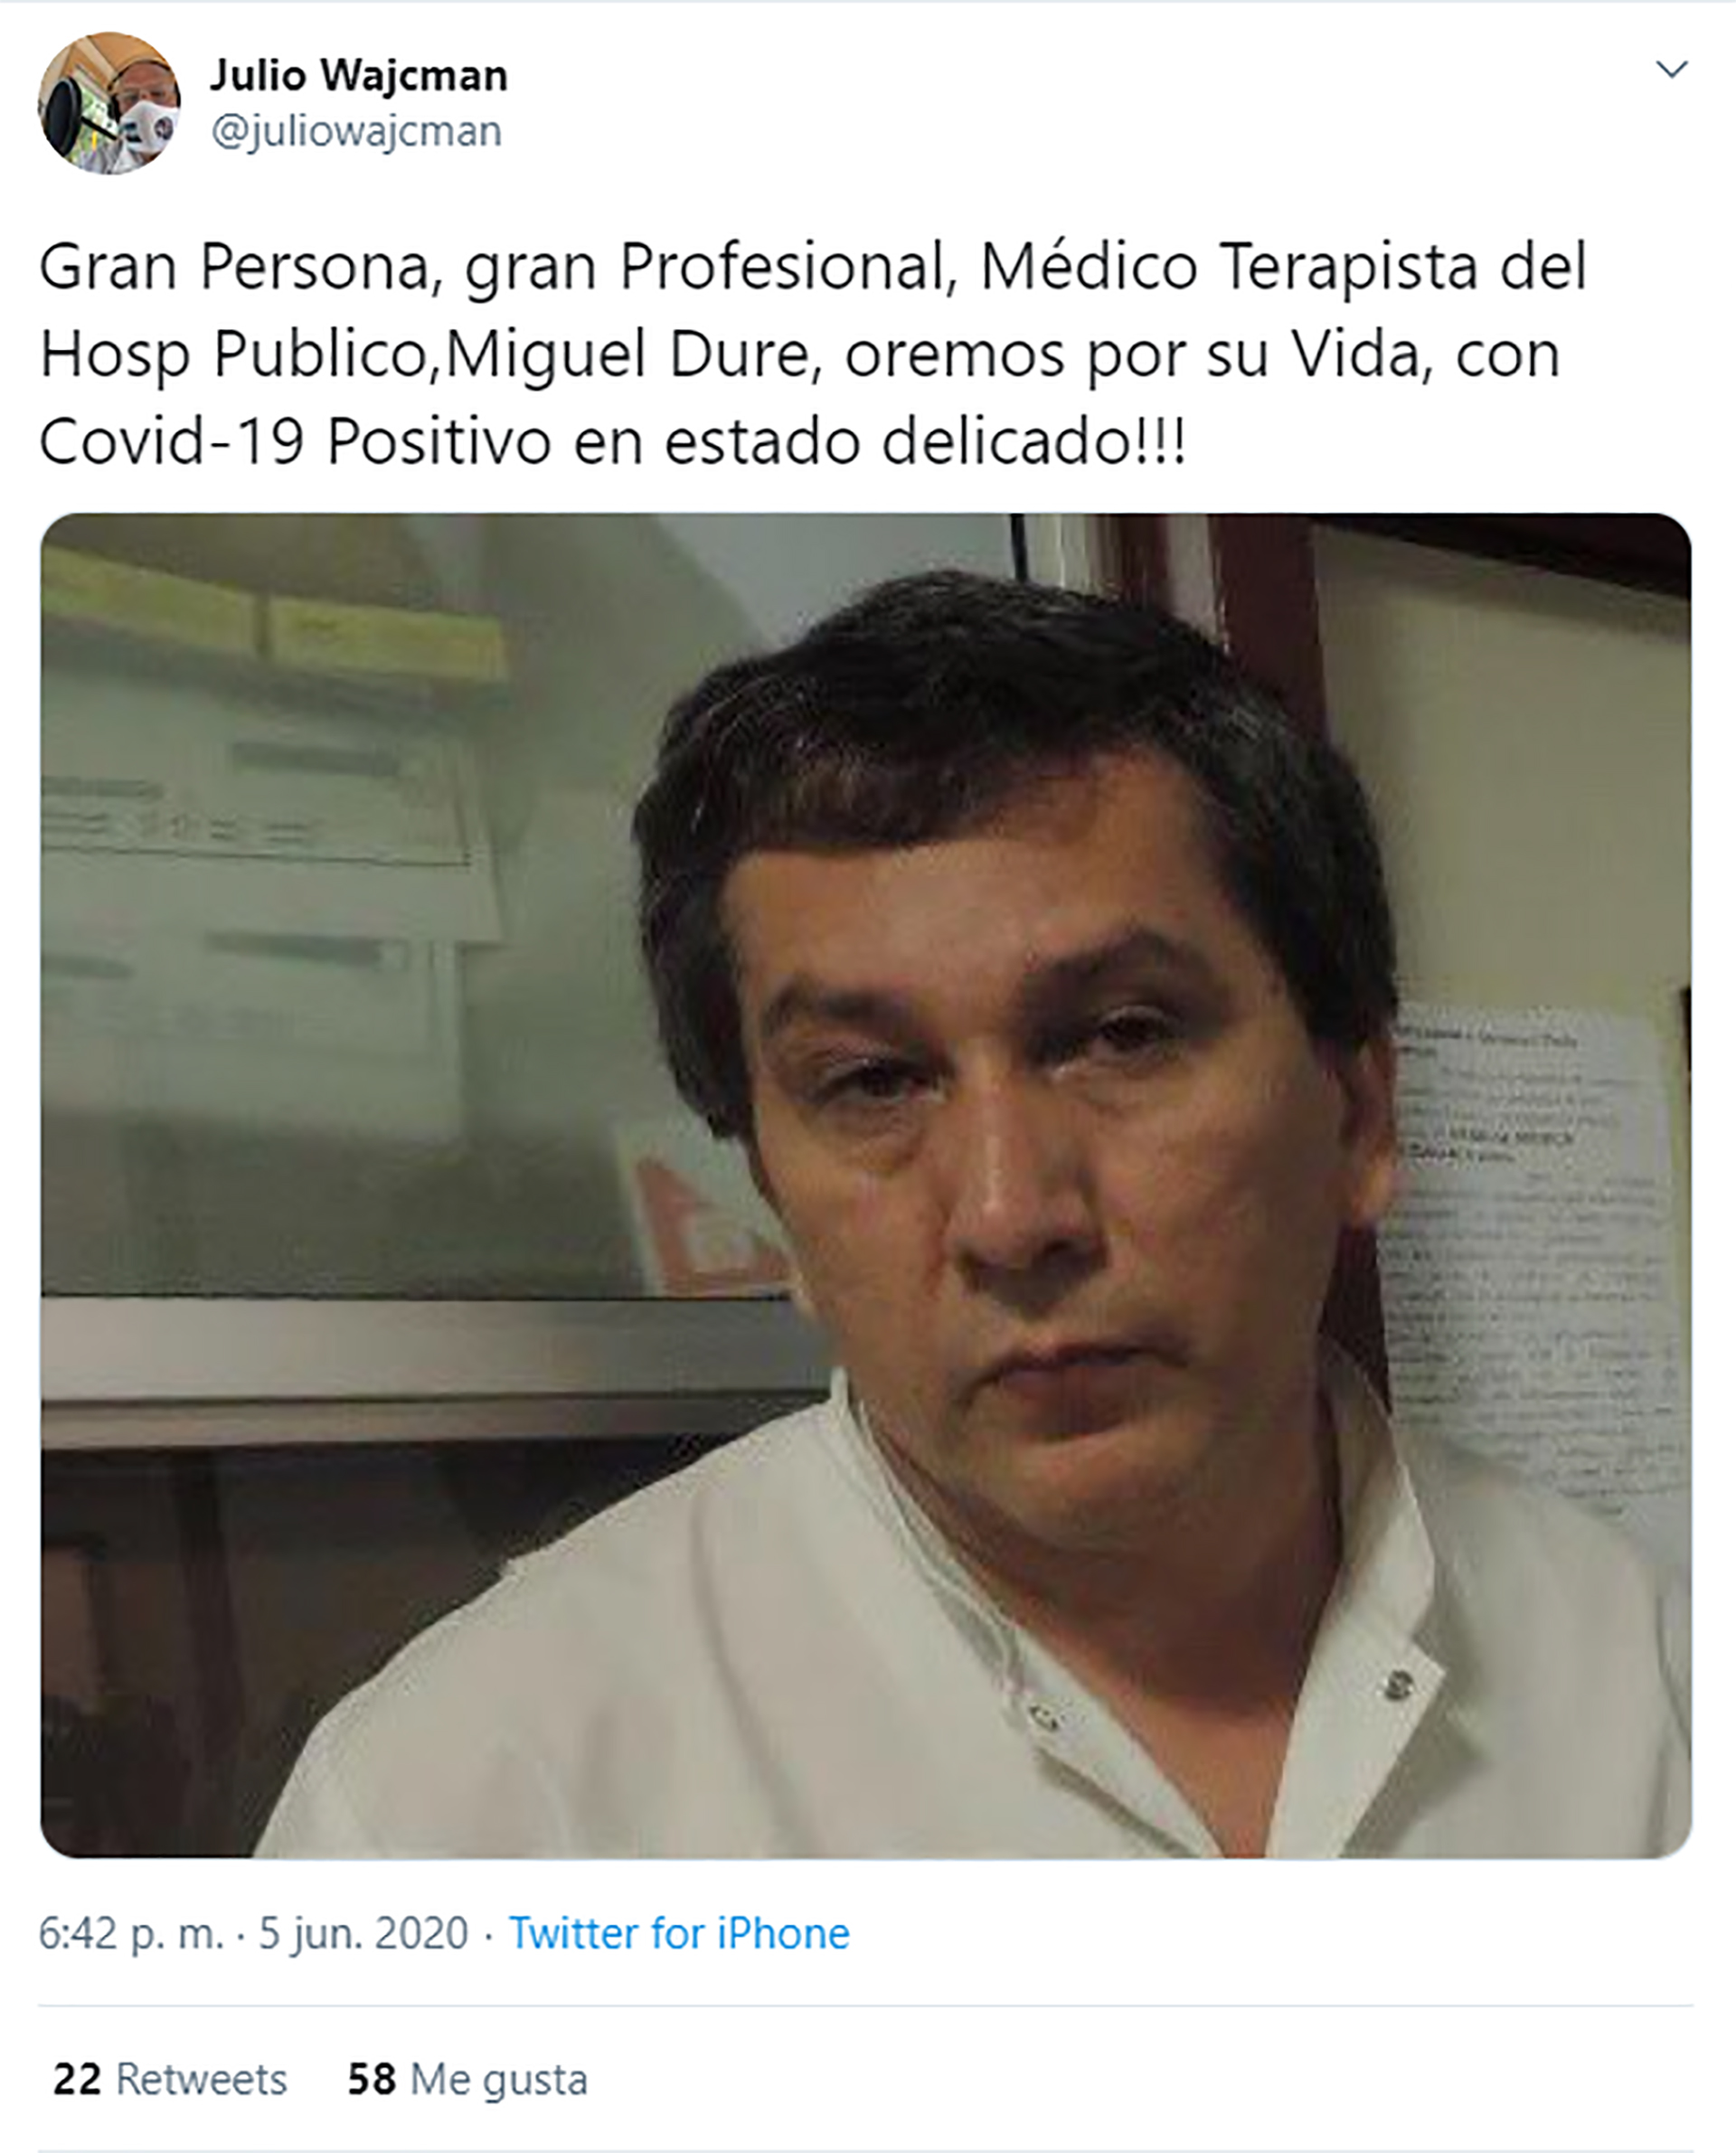 El doctor Miguel Duré, terapista del Hospital que contrajo COVID-19 y hace más de diez días que está internado. Su estado de salud es delicado.